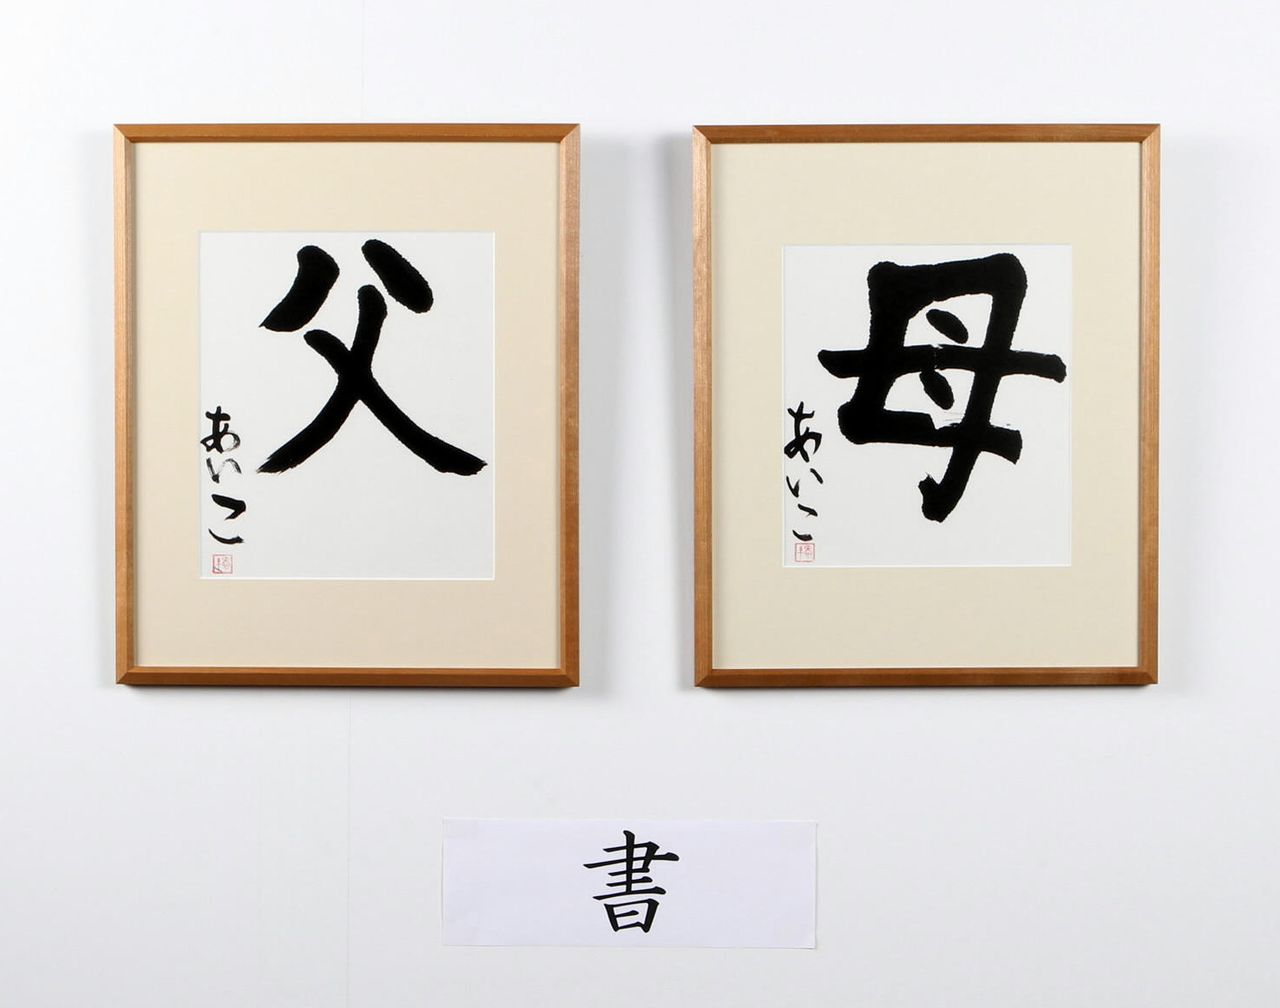 (gauche à droite) L’idéogramme du « père » (chichi) et de la « mère » (haha), calligraphiés par Aiko lors du Festival de la culture et de l’art organisé par l’Agence de la maison impériale en décembre 2012. (Jiji)